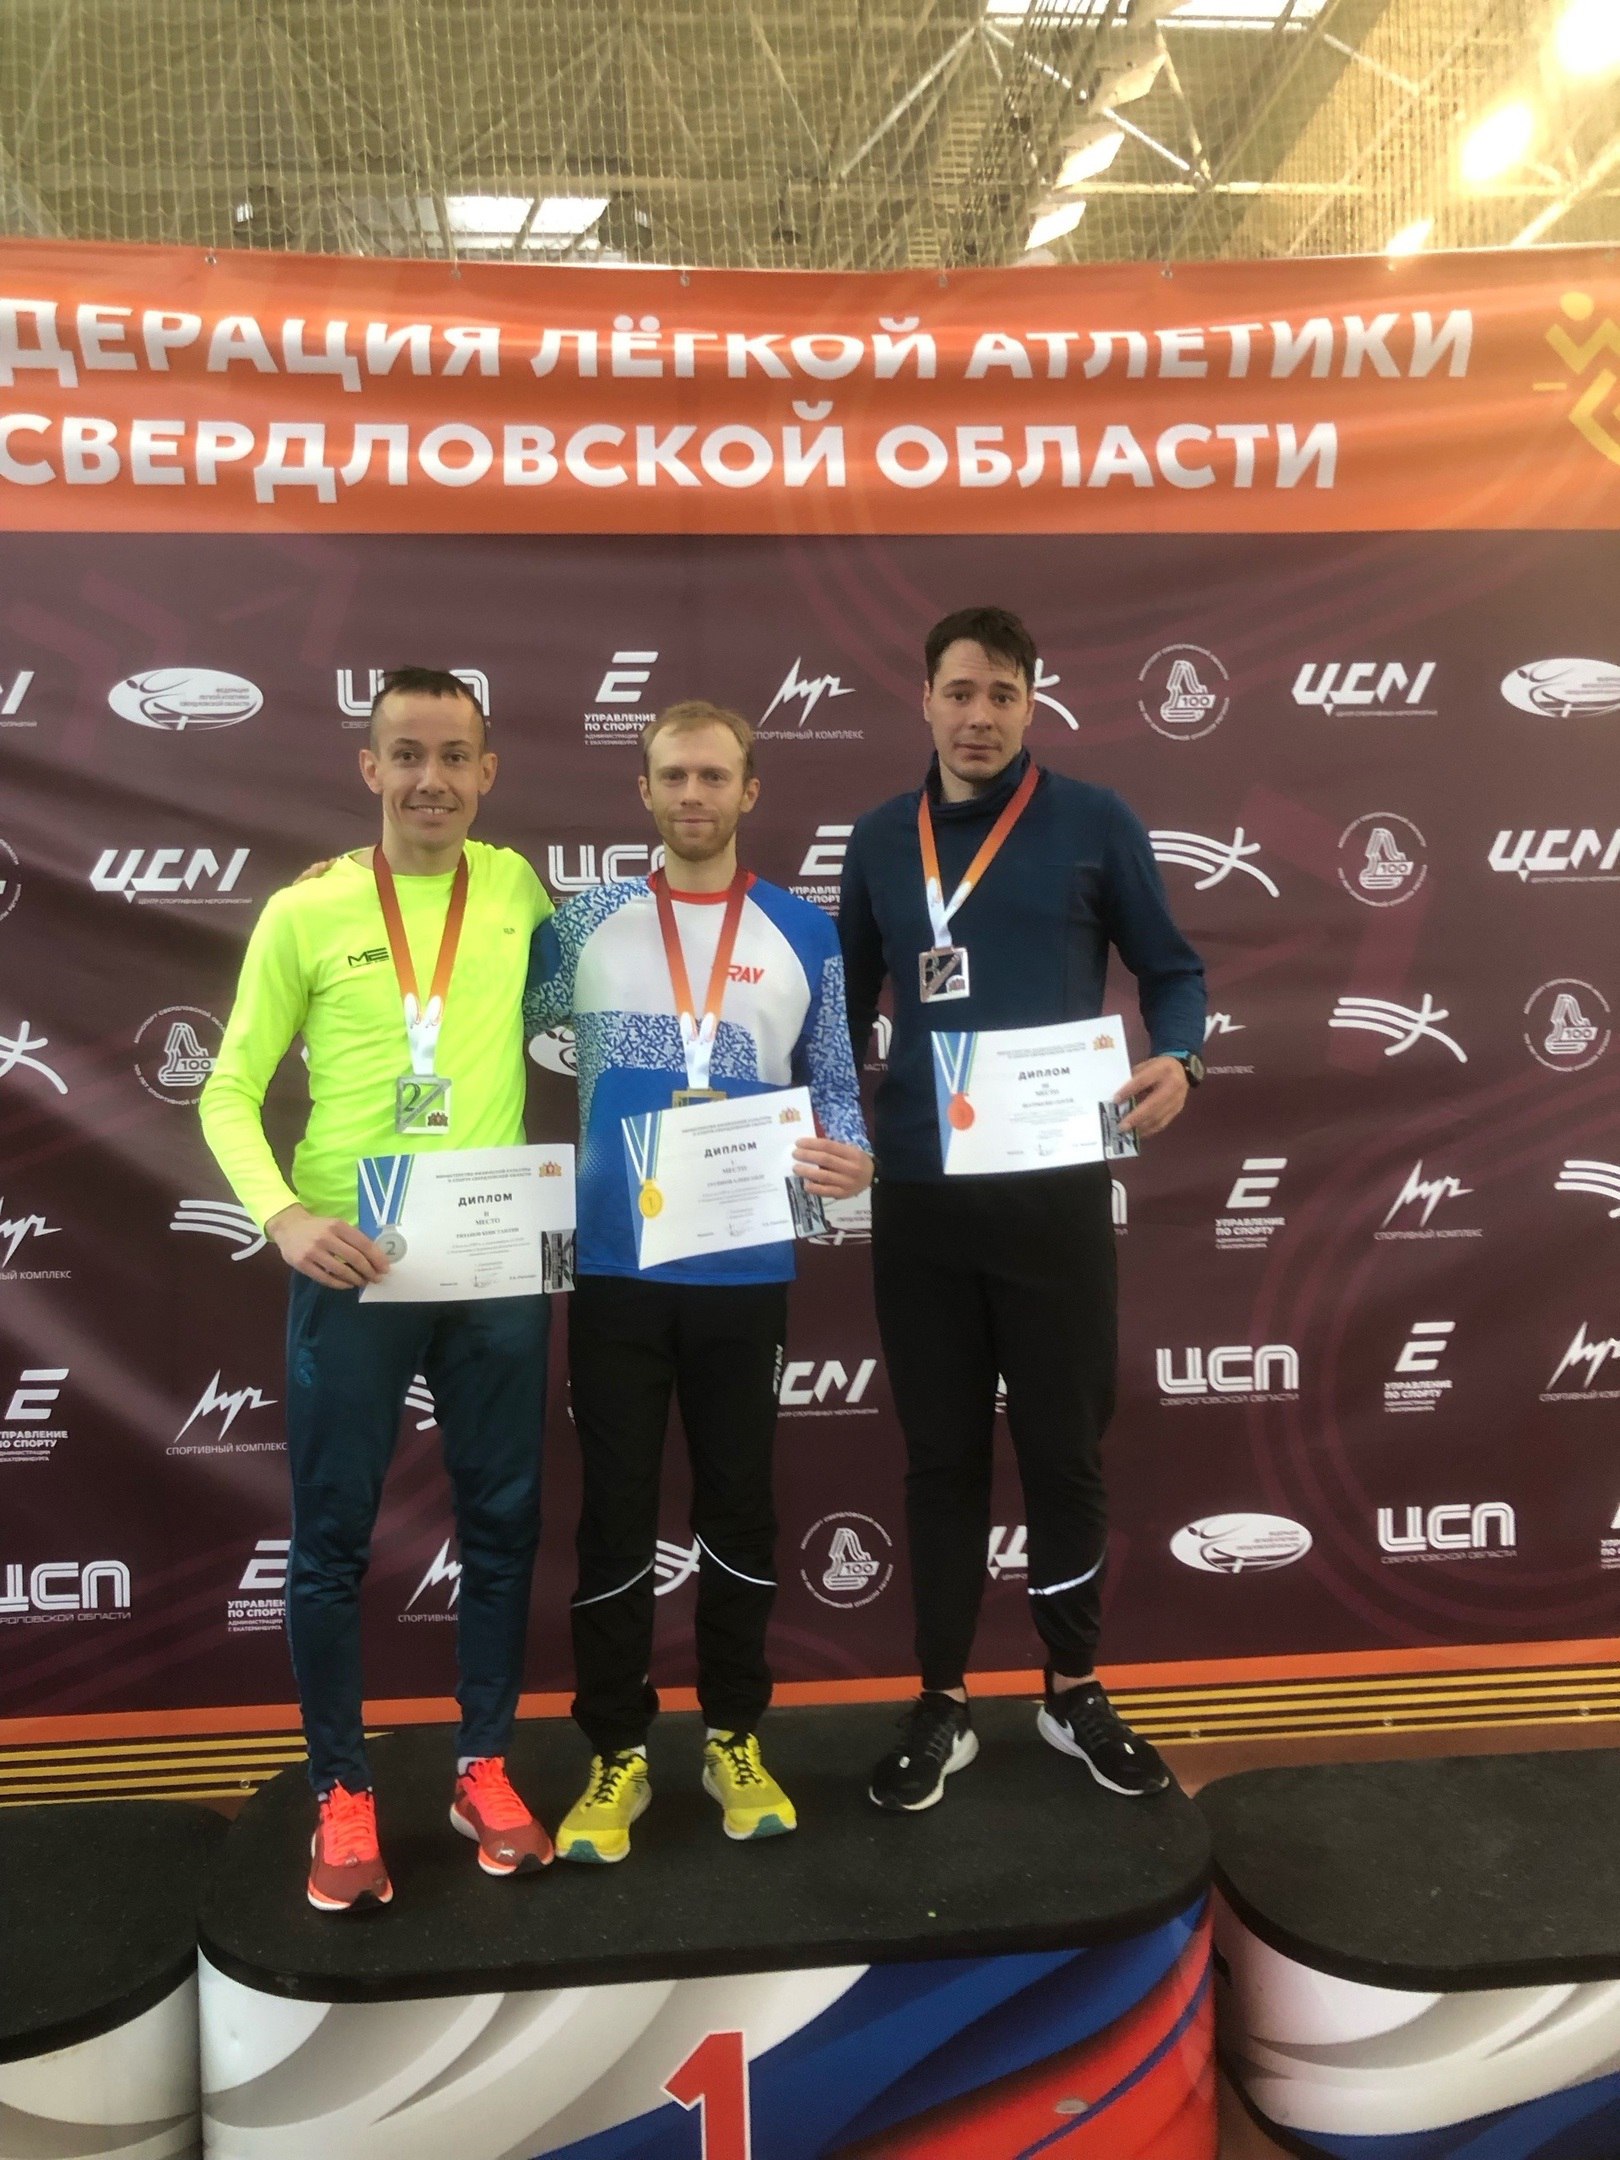 Награждение победителя и призеров на дистанции 5000 метров. Константин Рязанов (первый слева) на пьедестале почета